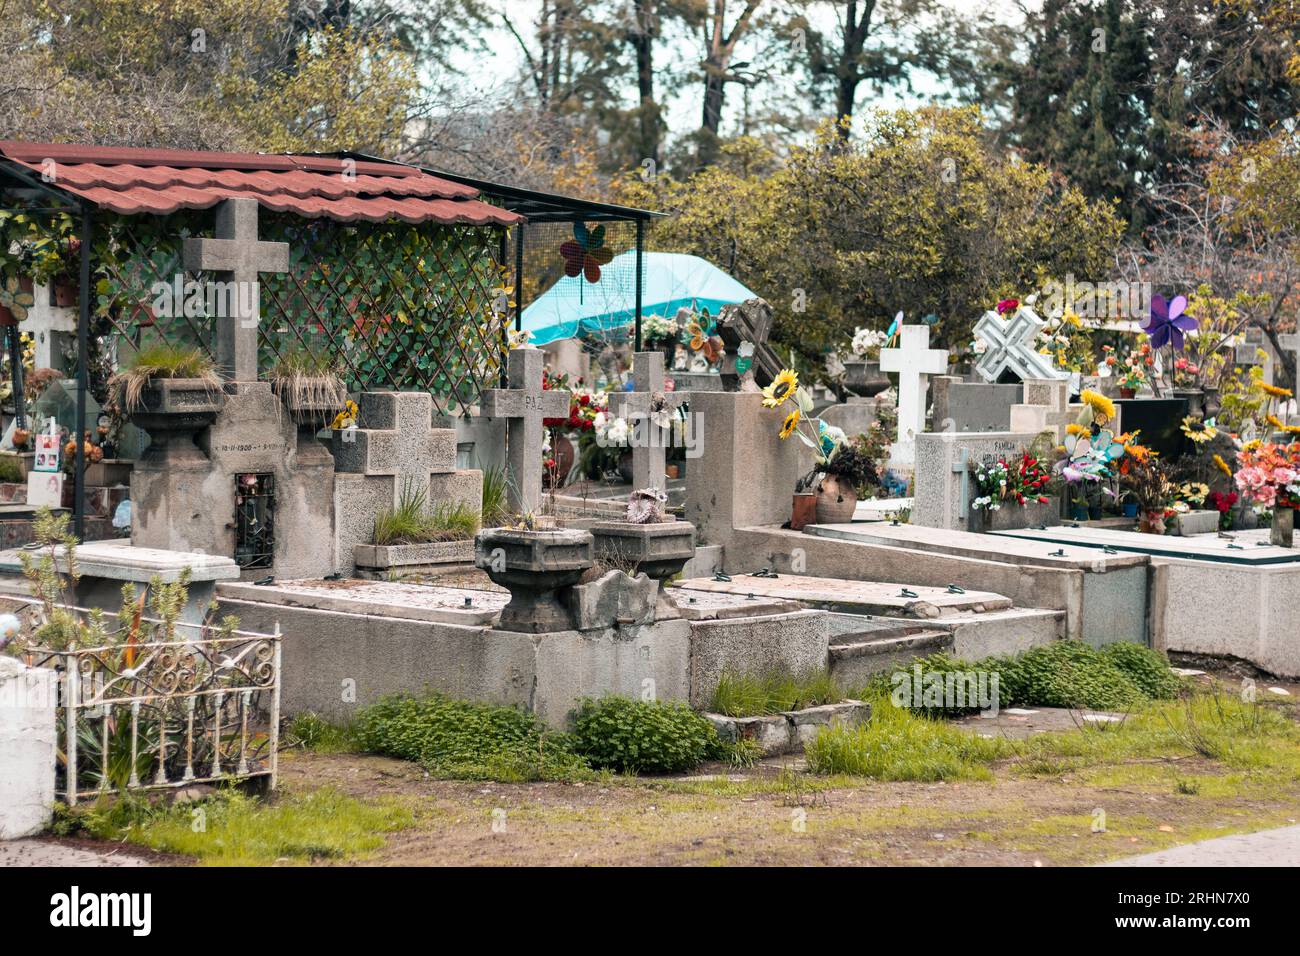 Gräber, Kreuze und Tempel auf einem Freiluftweg auf einem Friedhof Stockfoto